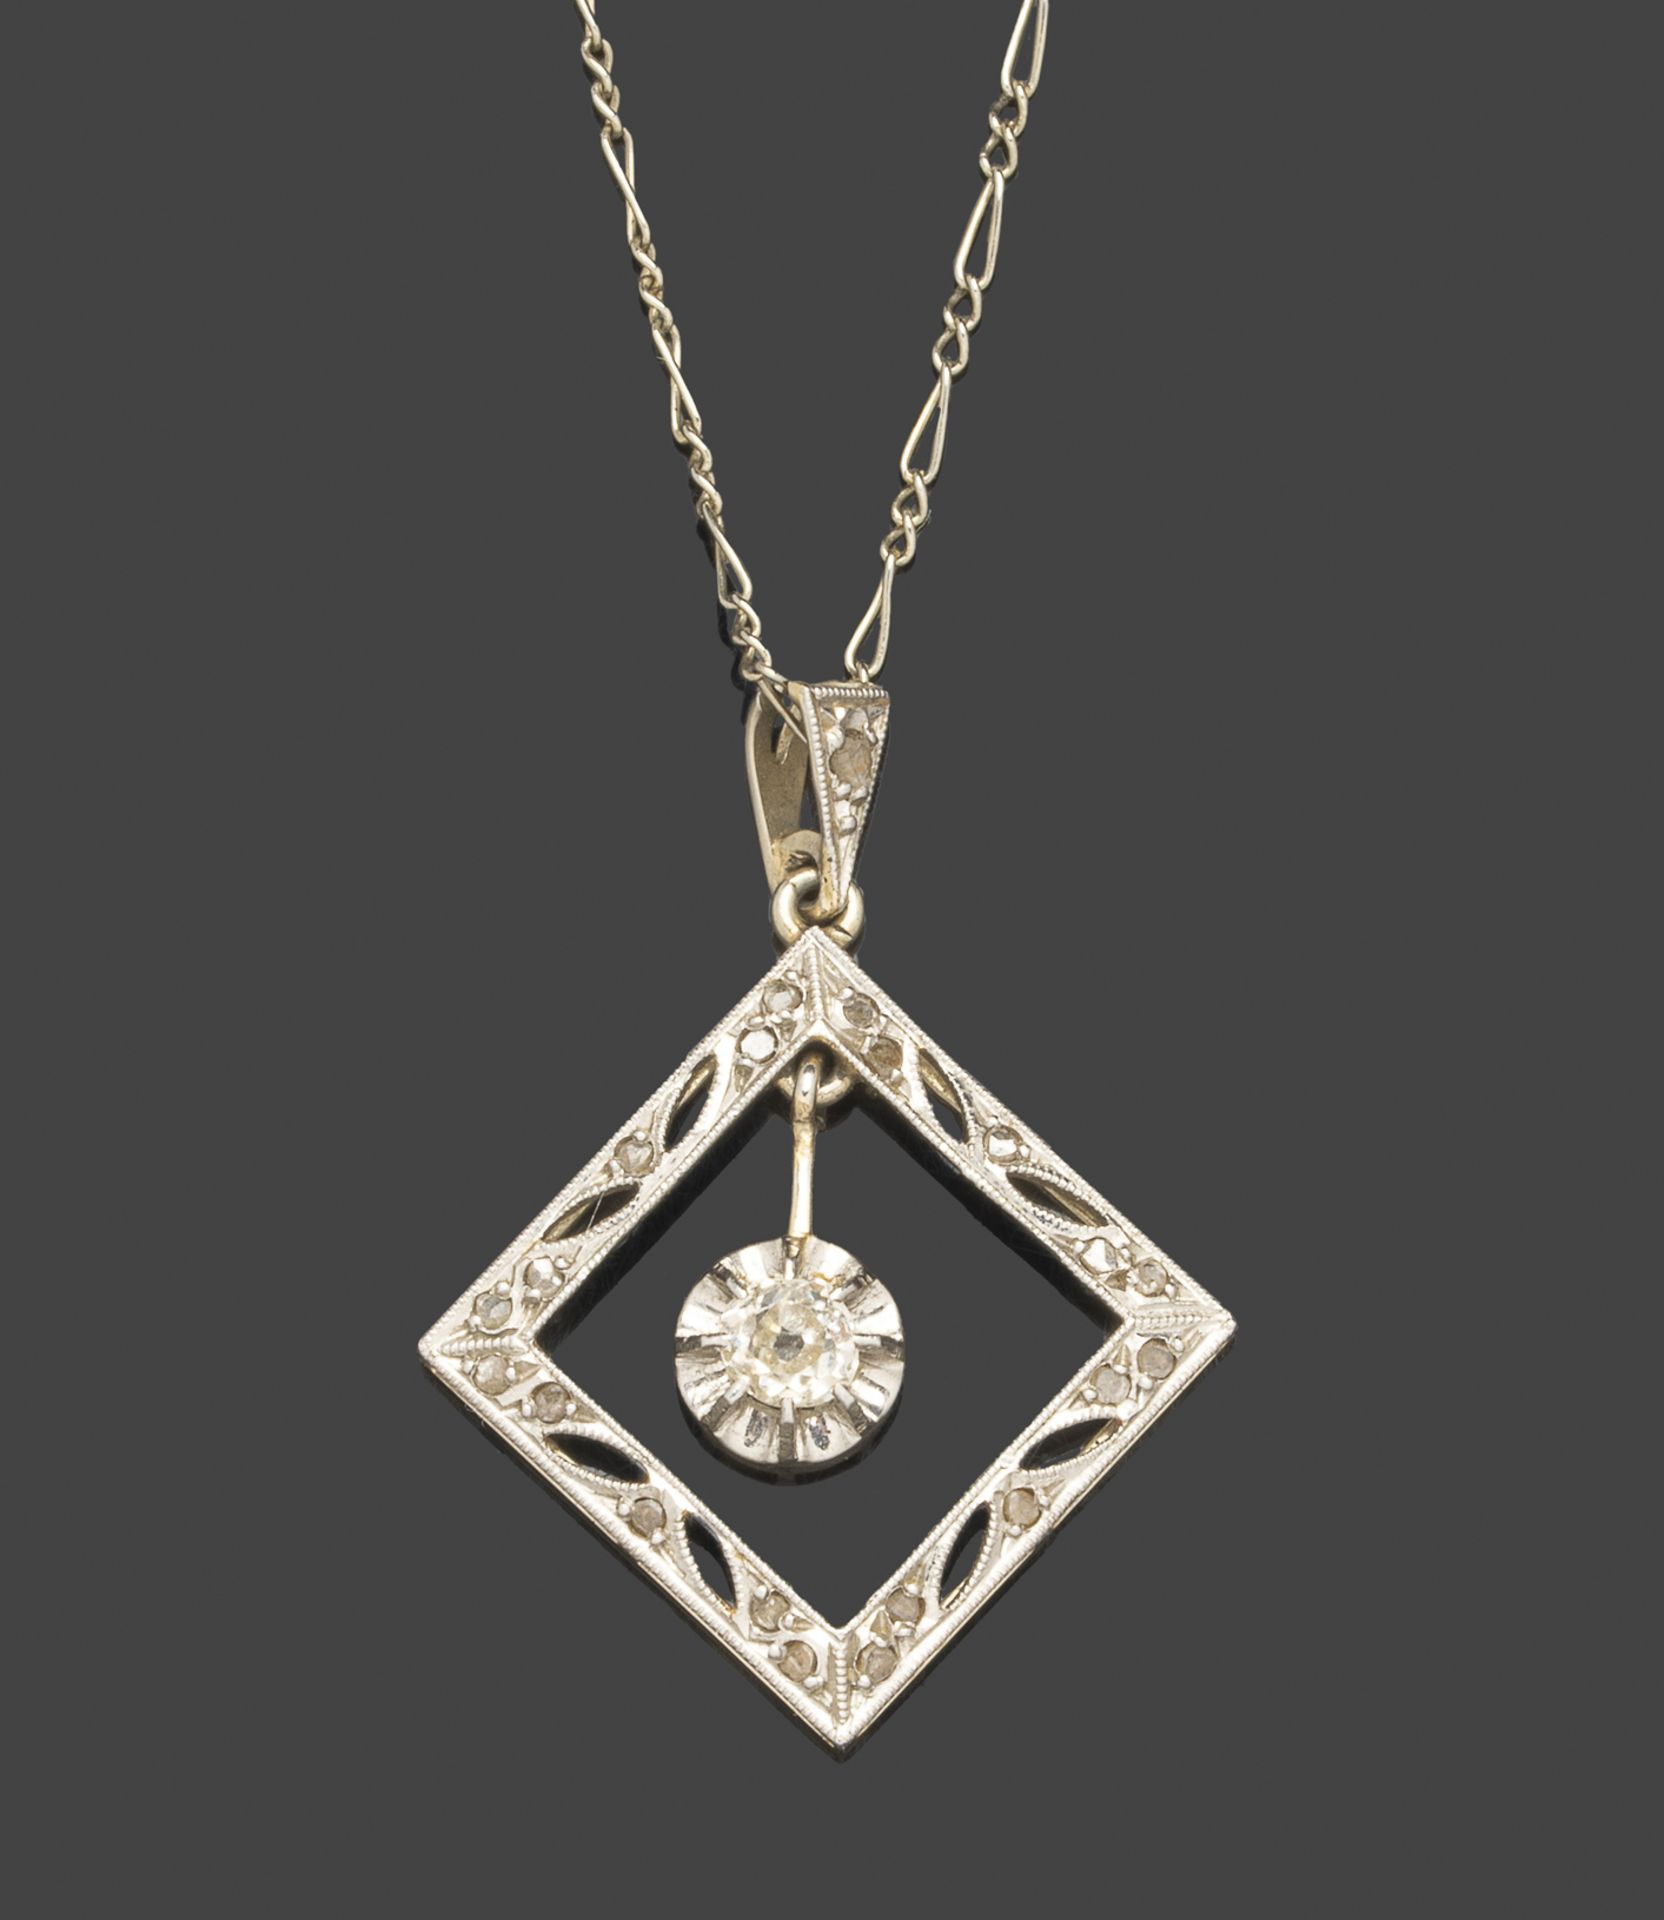 Pendentif en or blanc, de forme losangique centré d’un diamant mobile. (petit choc).Avec sa chaine